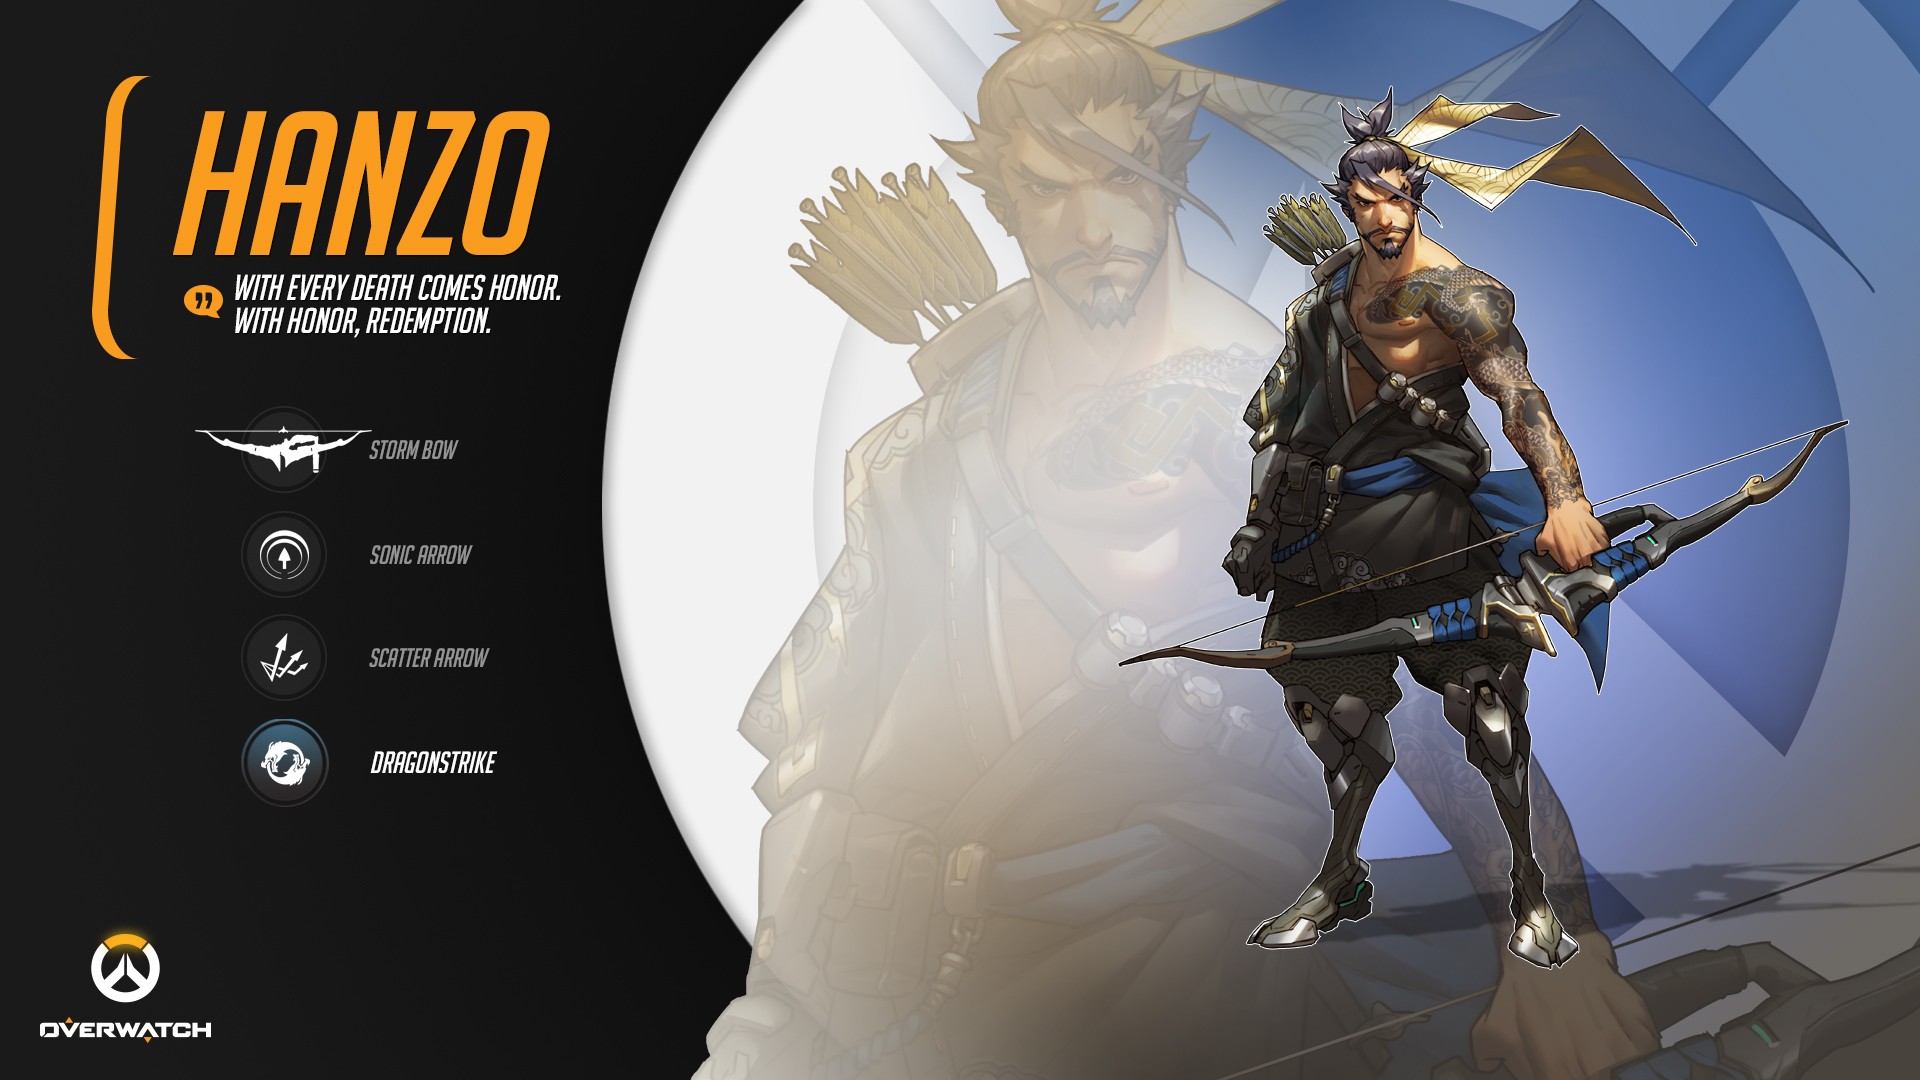 Blizzard Entertainment Overwatch Video Games Hanzo Overwatch Hanzo Hanzo Shimada 1920x1080